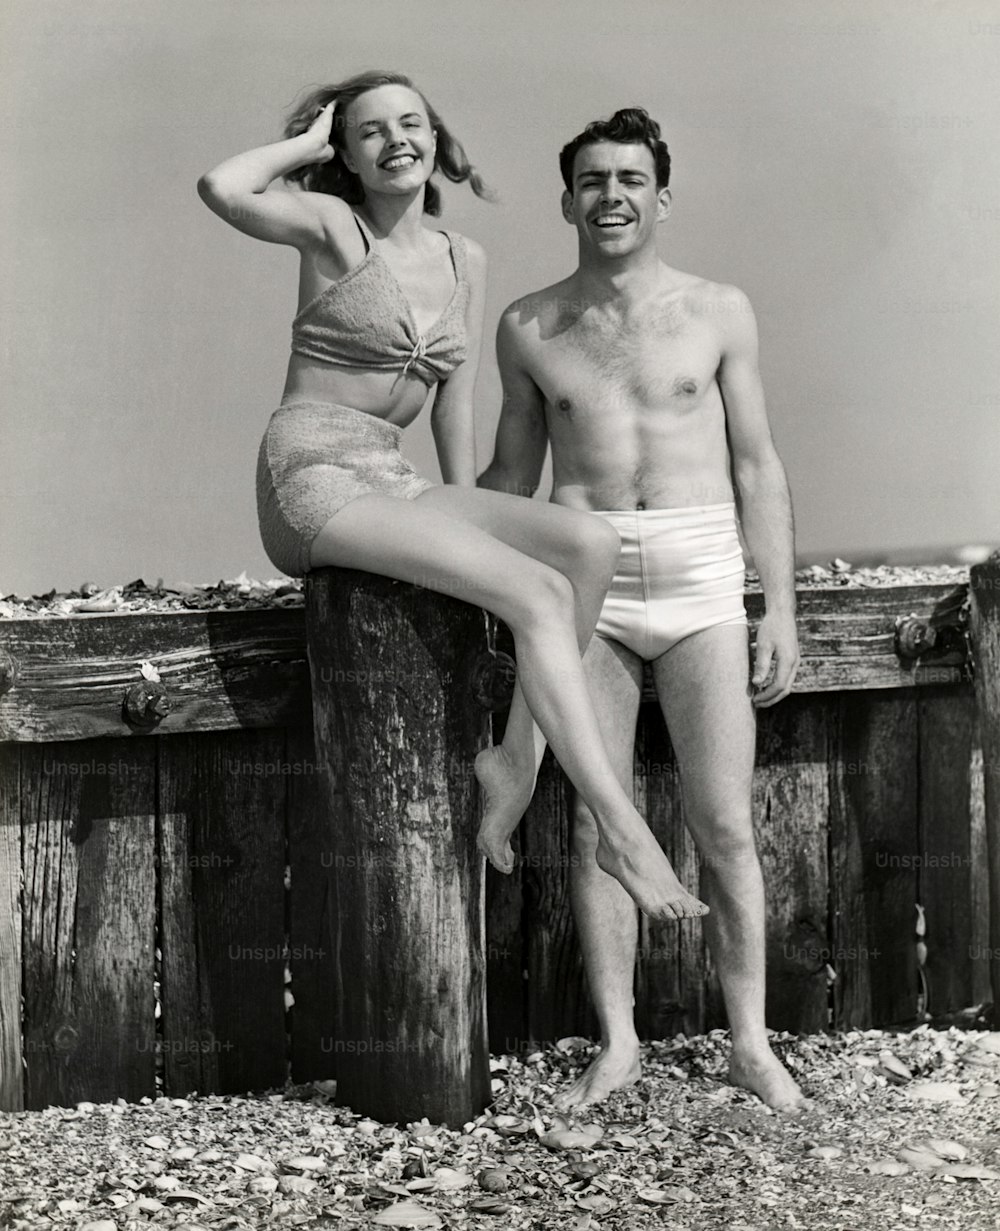 VEREINIGTE STAATEN - CIRCA 1950er Jahre: Paar am Strand stehend.